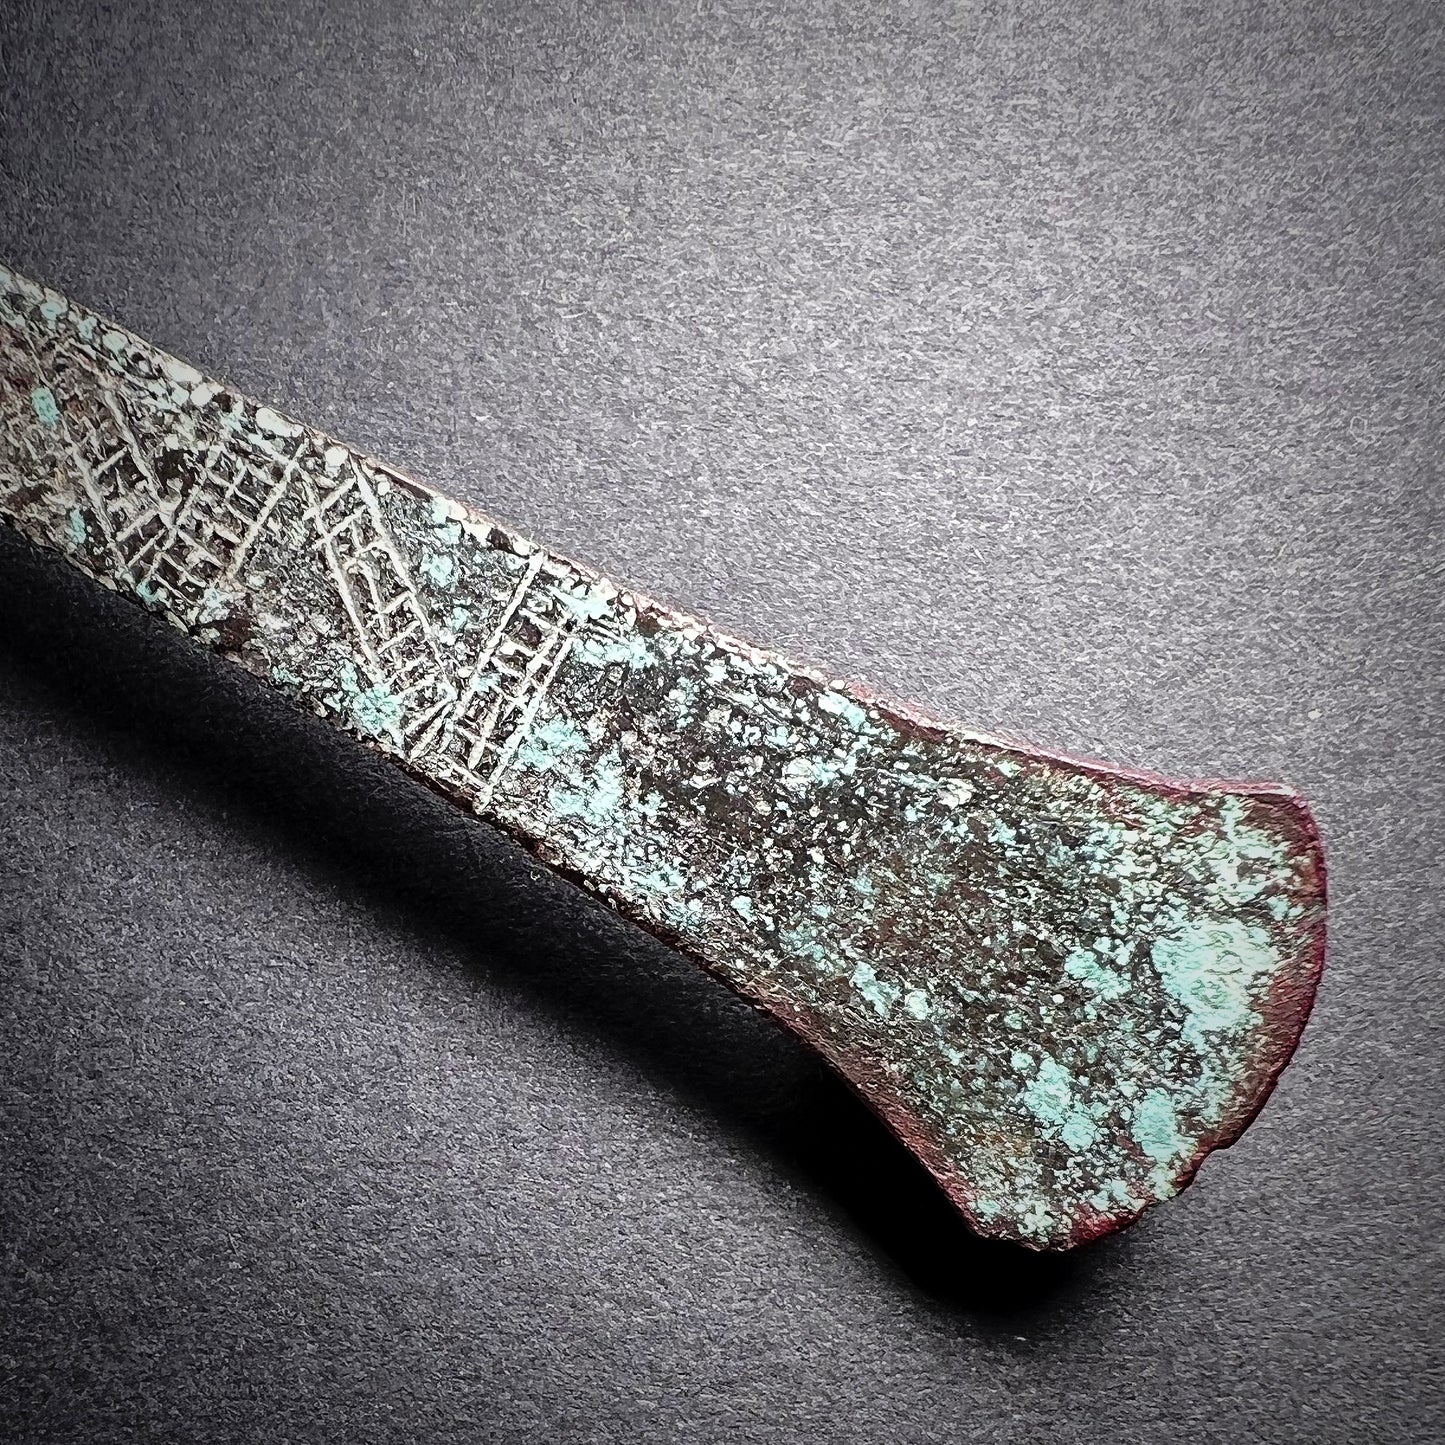 Moche Ceremonial Copper Alloy Knife Tumi